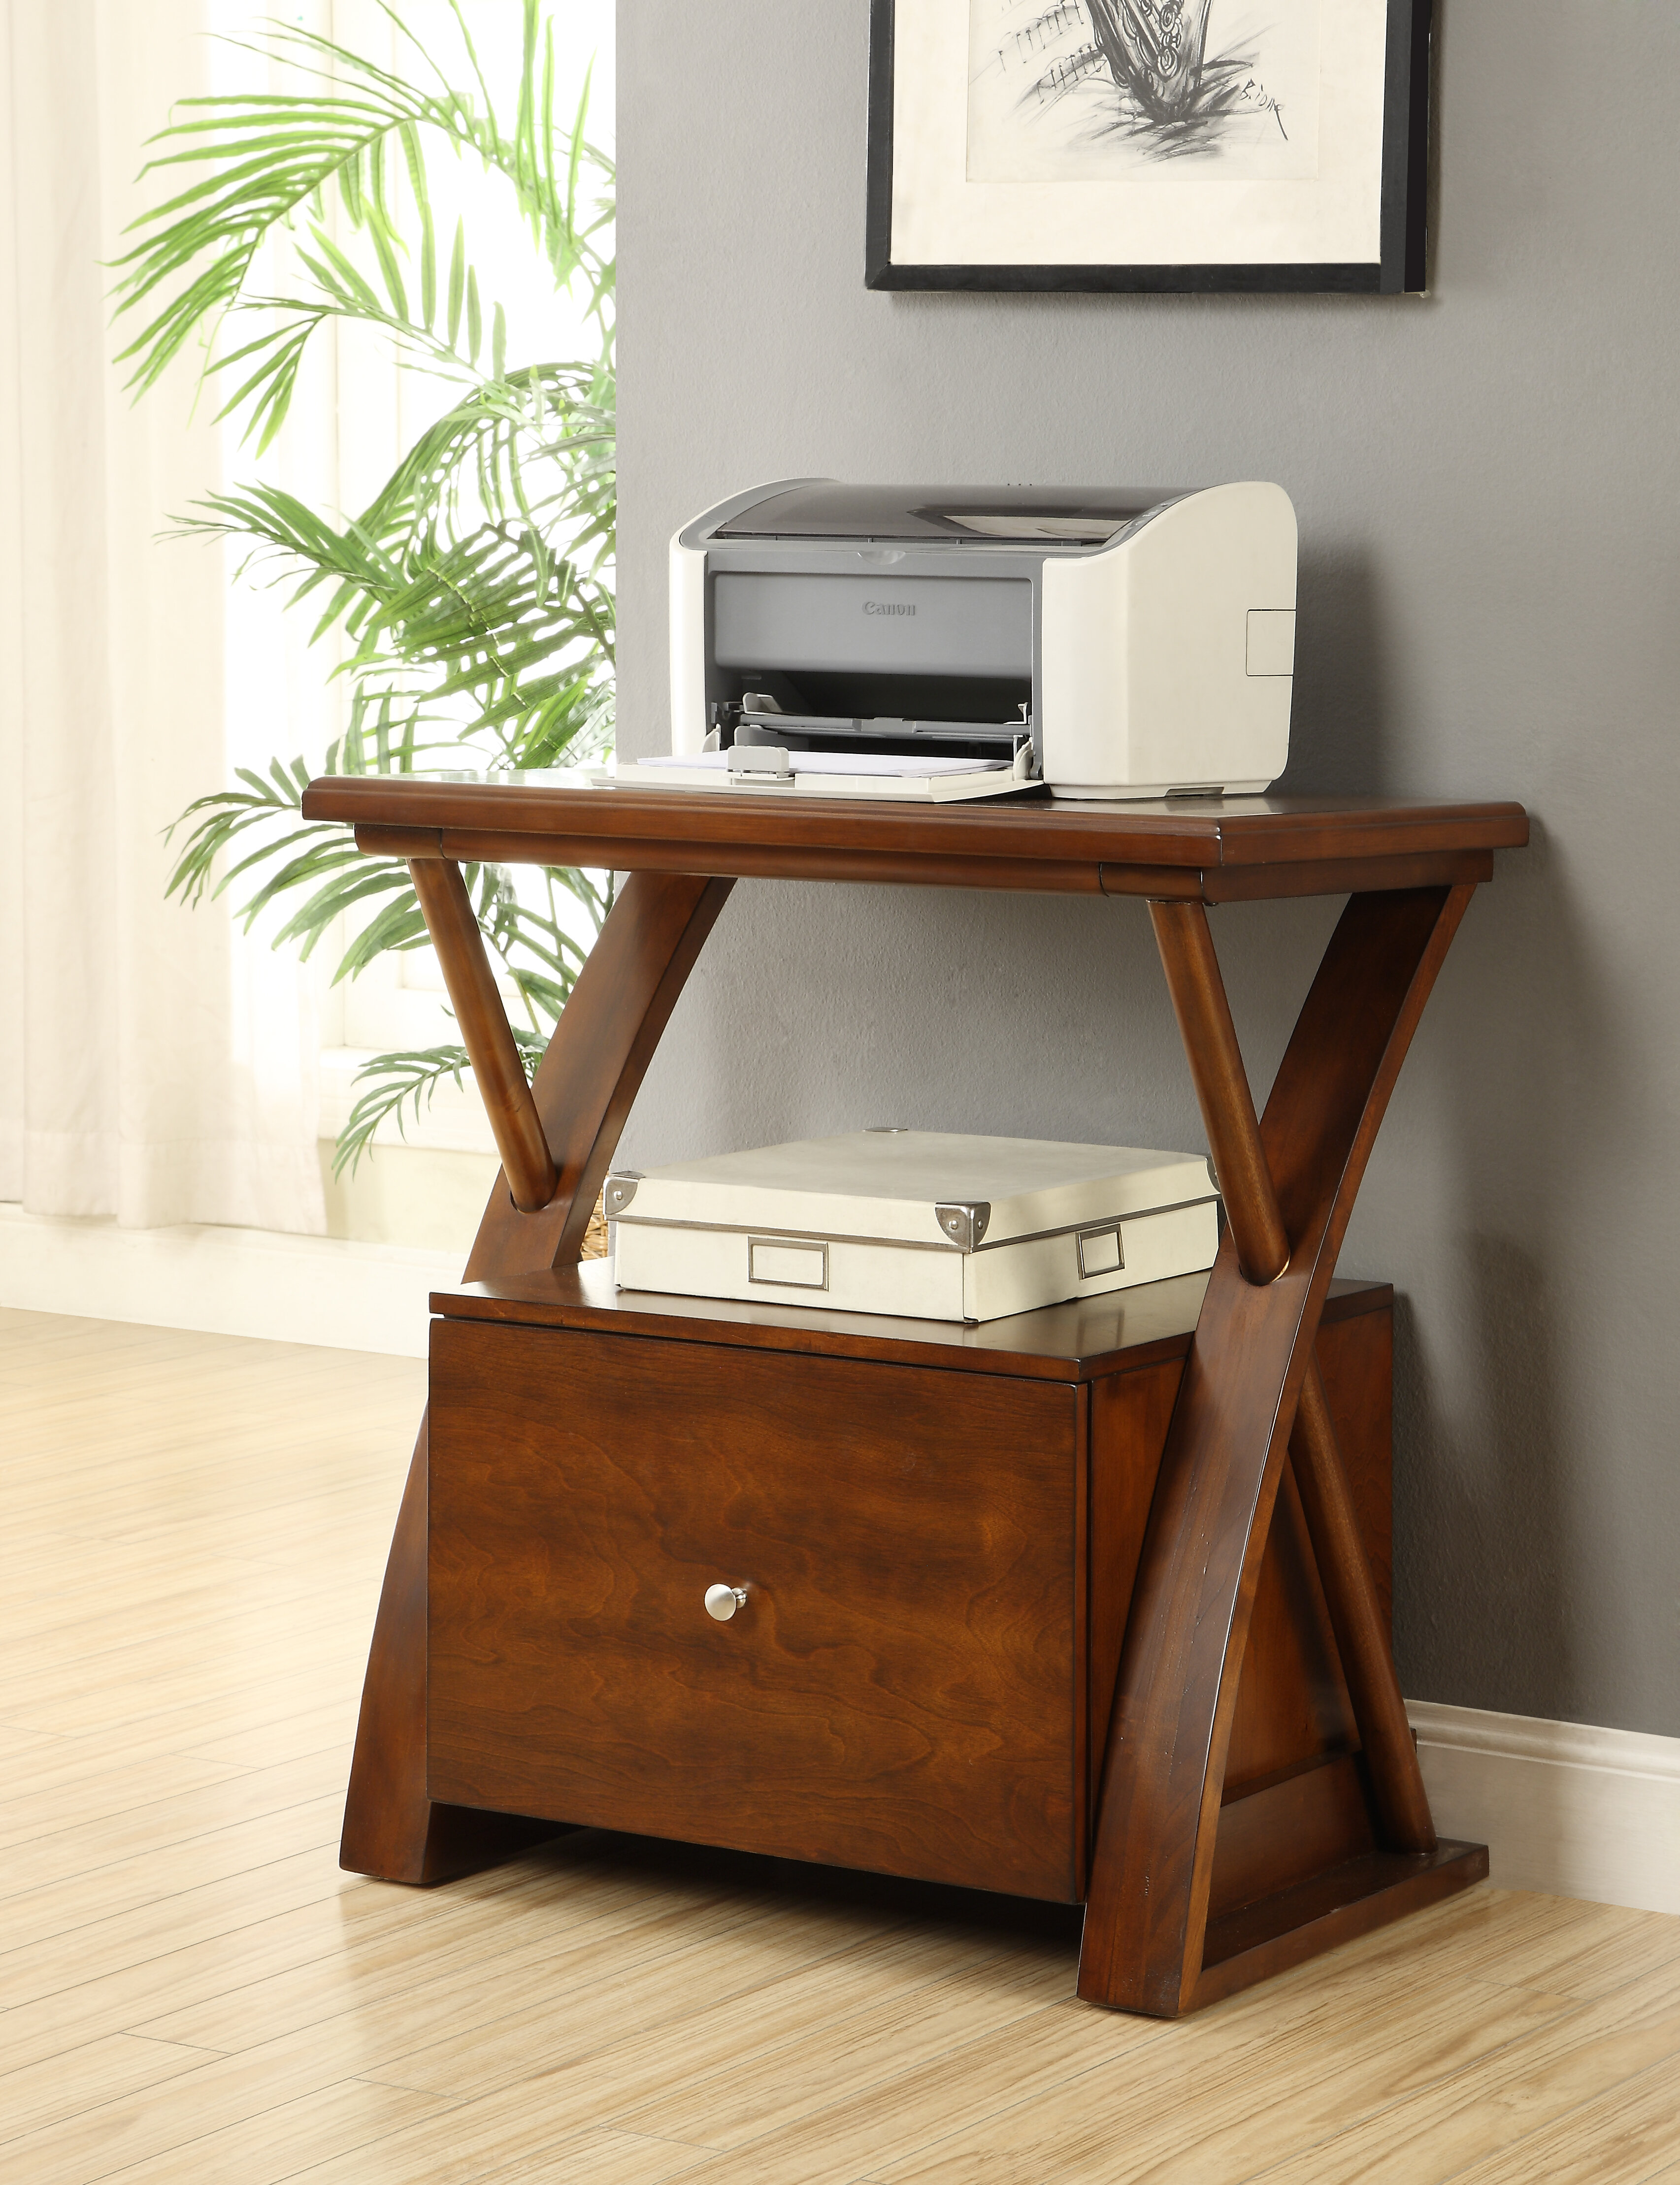 Legends Furniture Super Z Printer Stand Reviews Wayfair